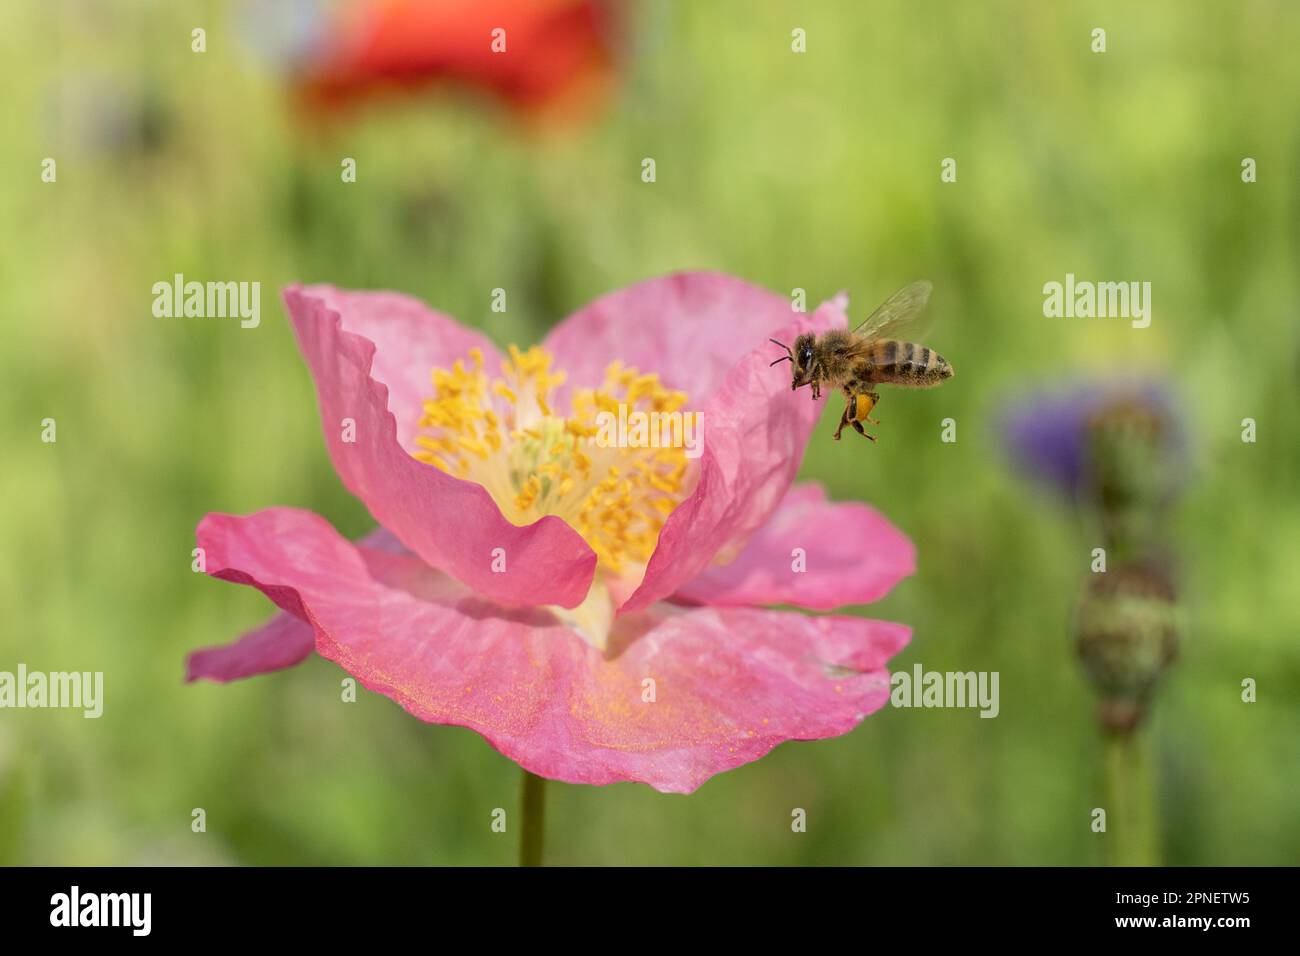 Nahaufnahme von Honigbienen, die mit Pollen bedeckt sind und auf rosa Mohnblumen landen Stockfoto